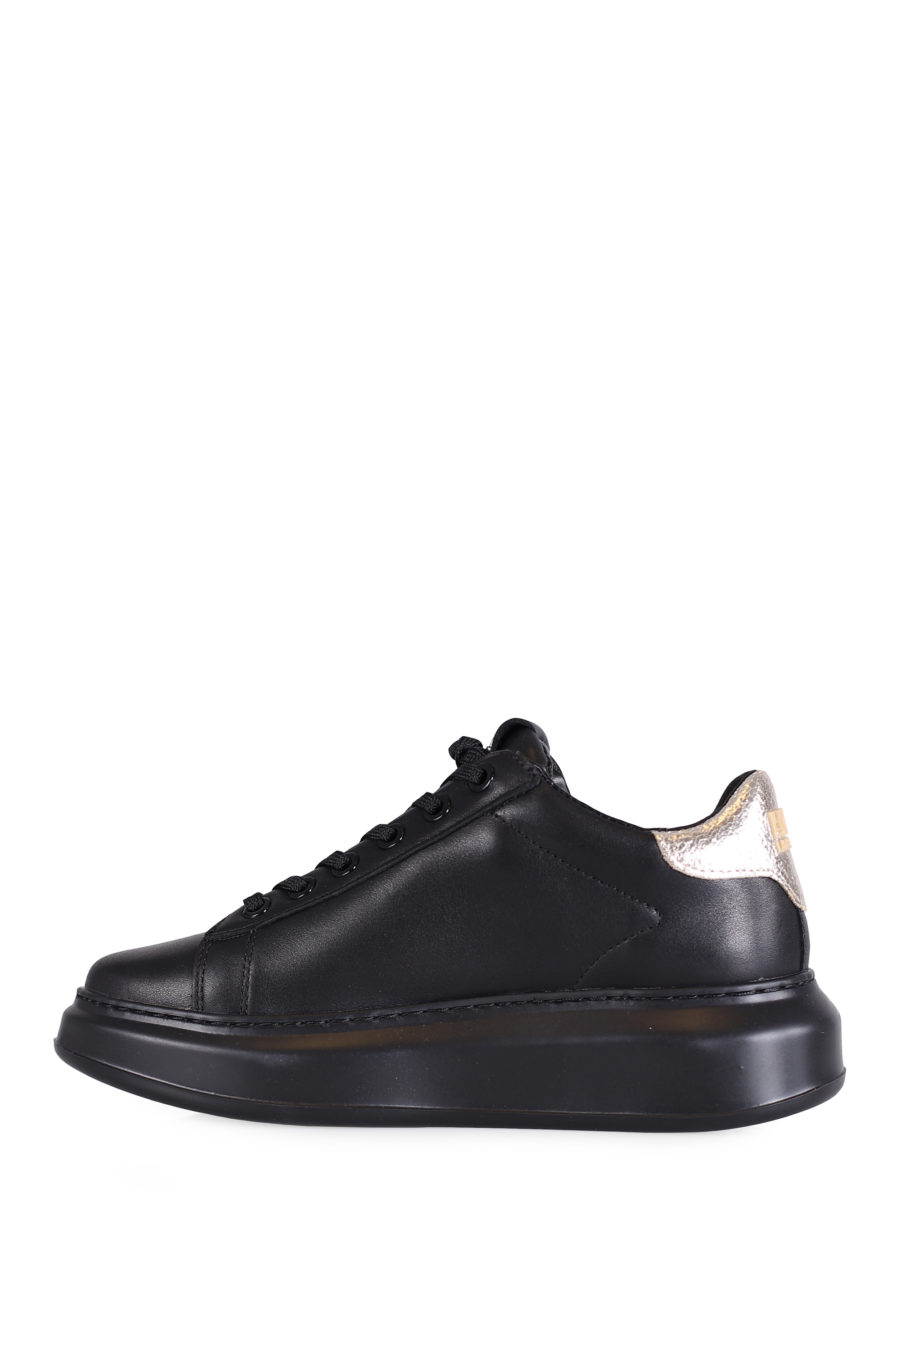 Zapatillas negras con logotipo y suela alta - IMG 0720